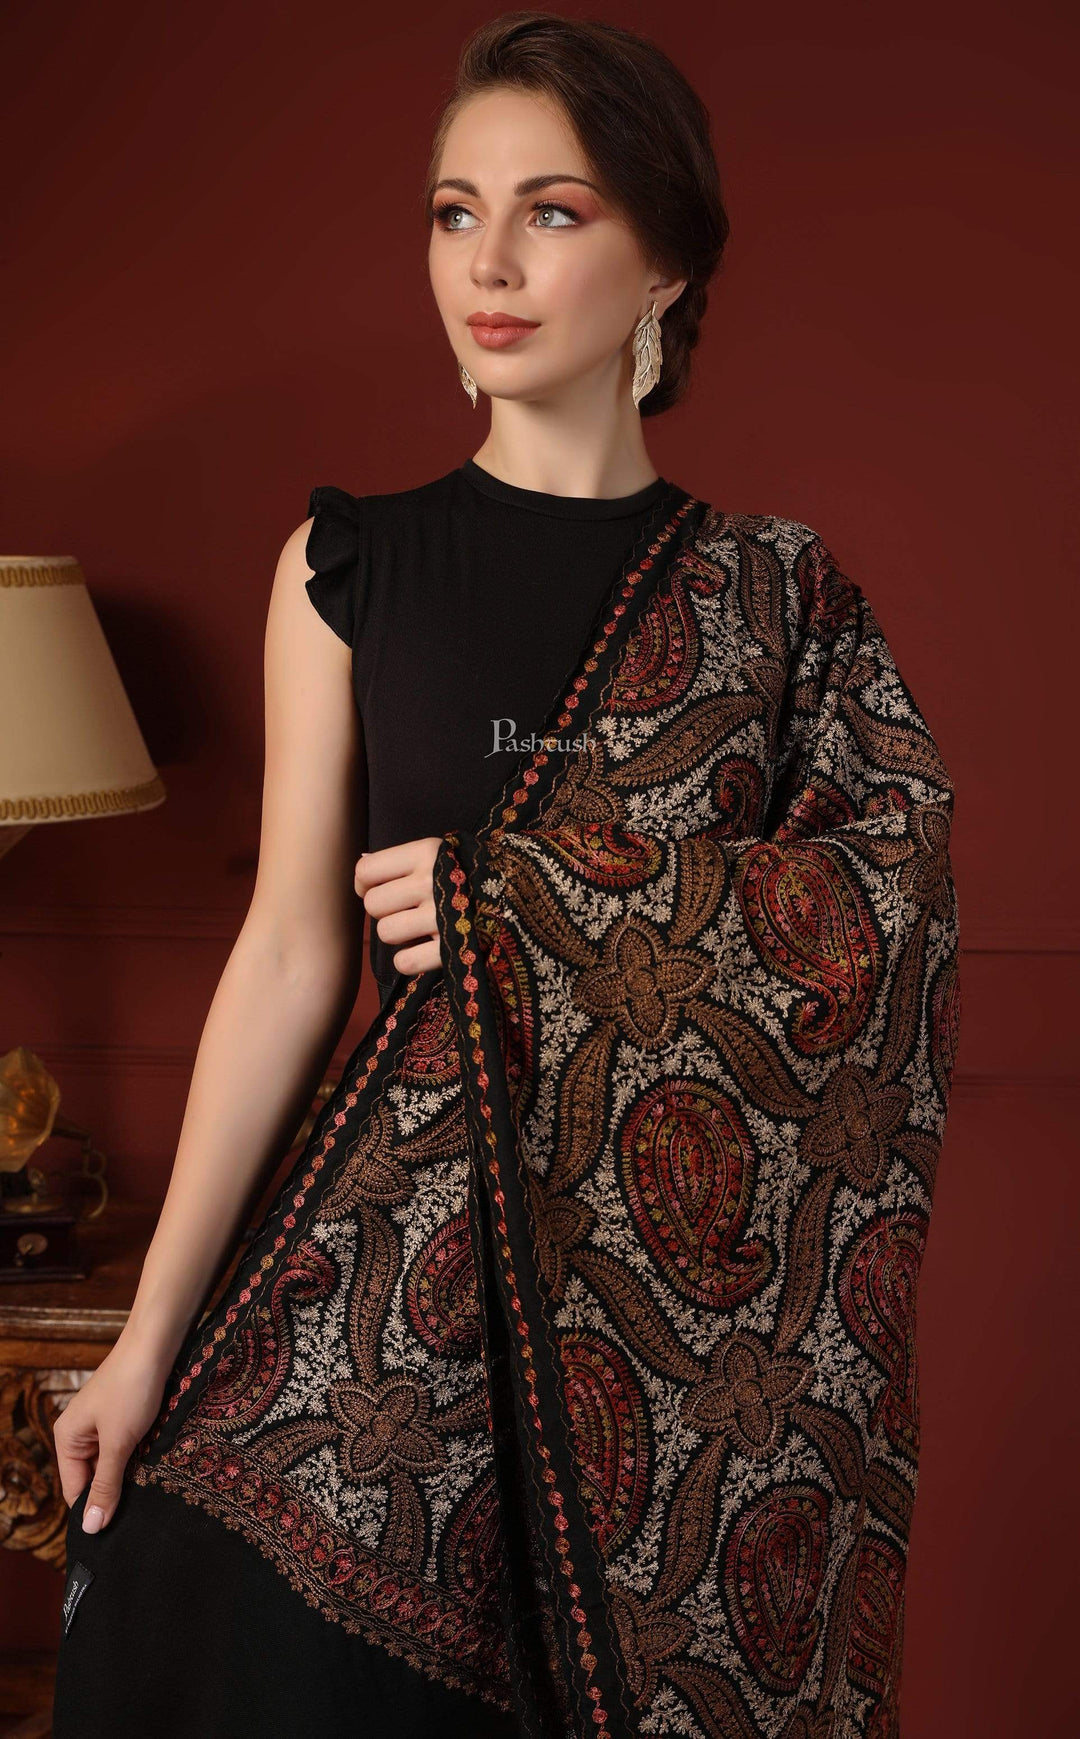 Pashtush India 70x200 Pashtush Womens Woollen Stole with Nalki Embroidery, Black